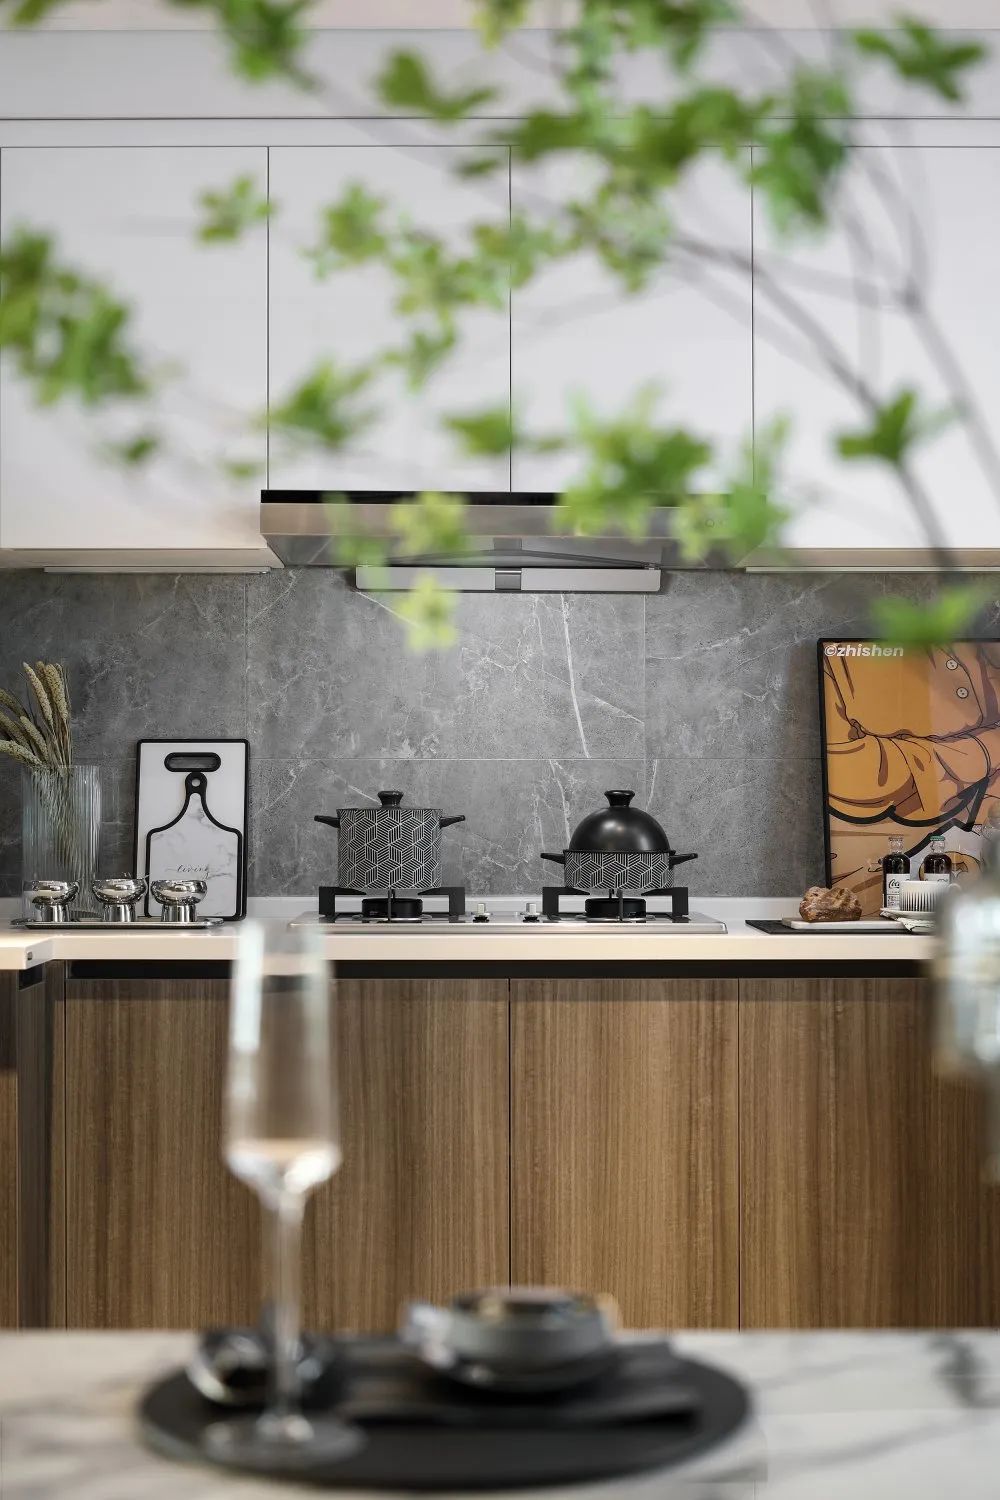 现代简约风格室内设计家装案例-厨房